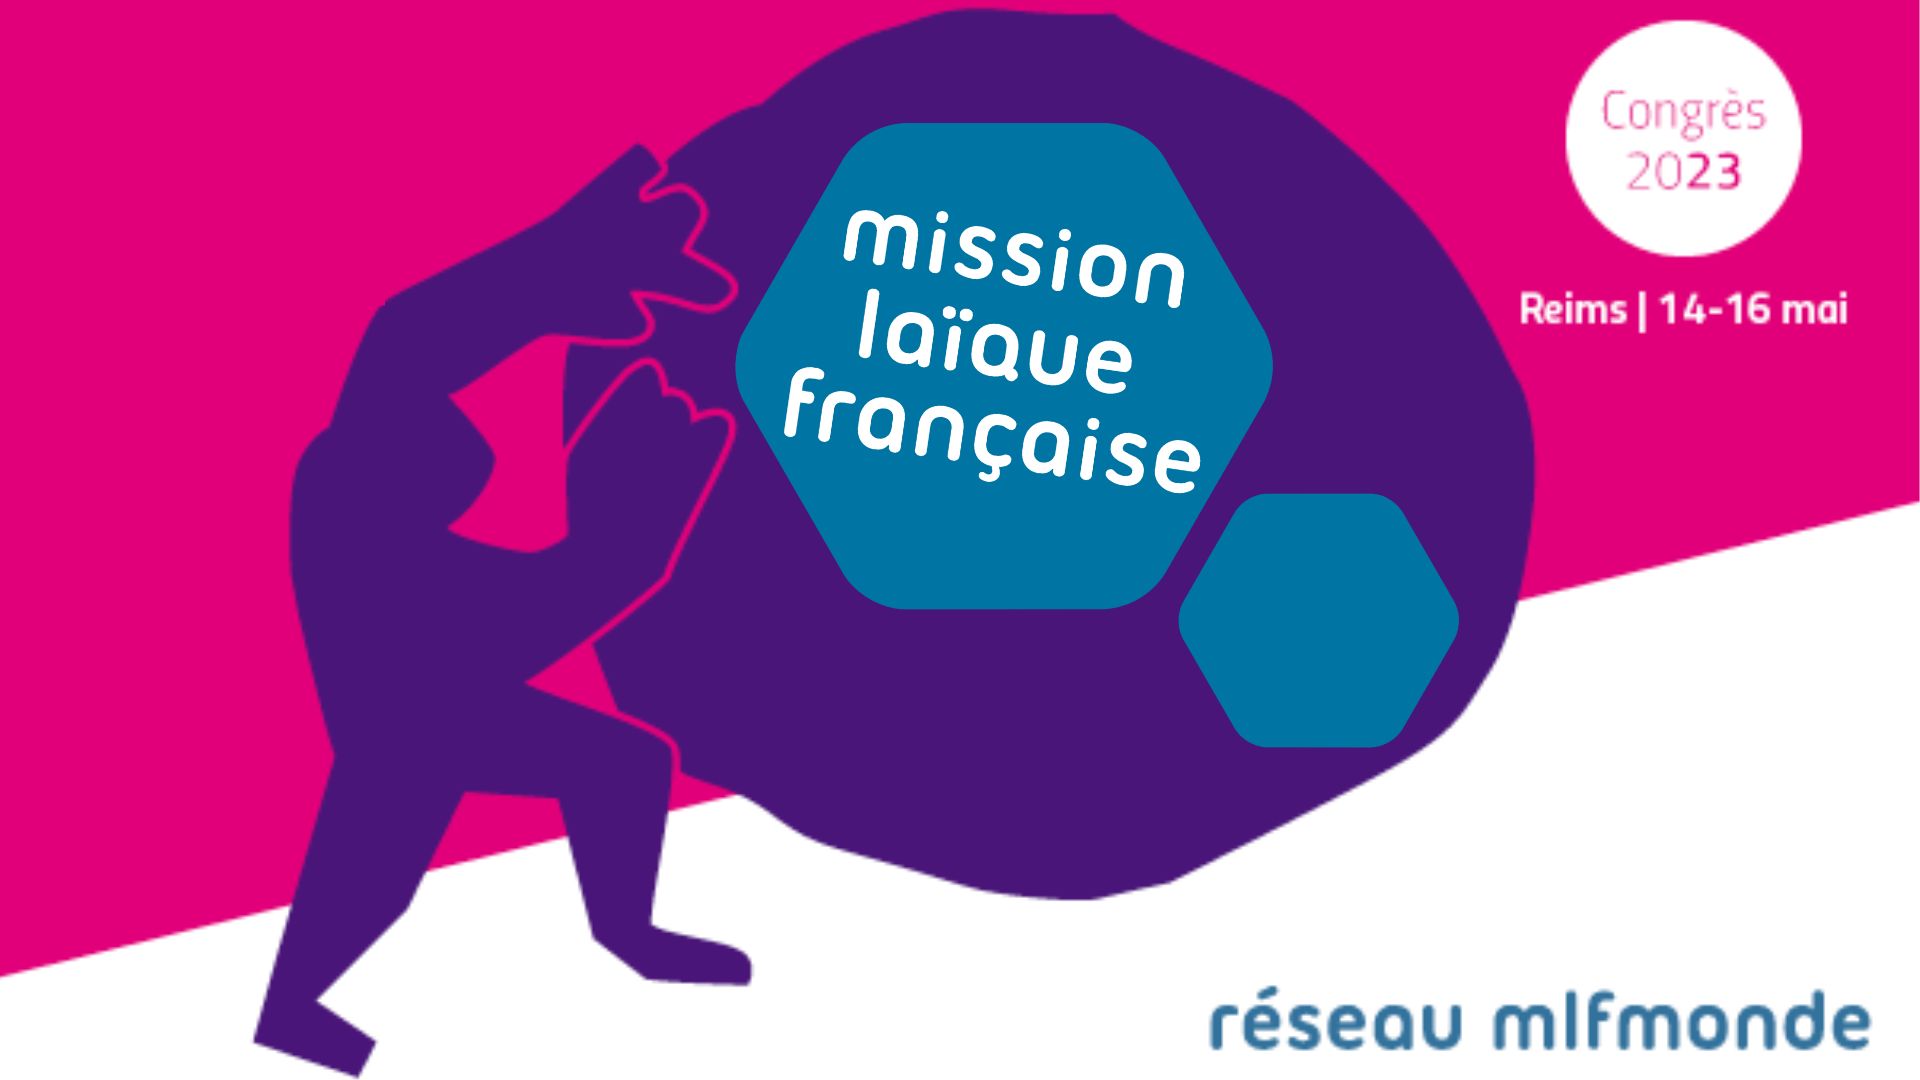 Vivre ailleurs, sur RFI : L’édition 2023 du Congrès annuel de la Mission laïque française